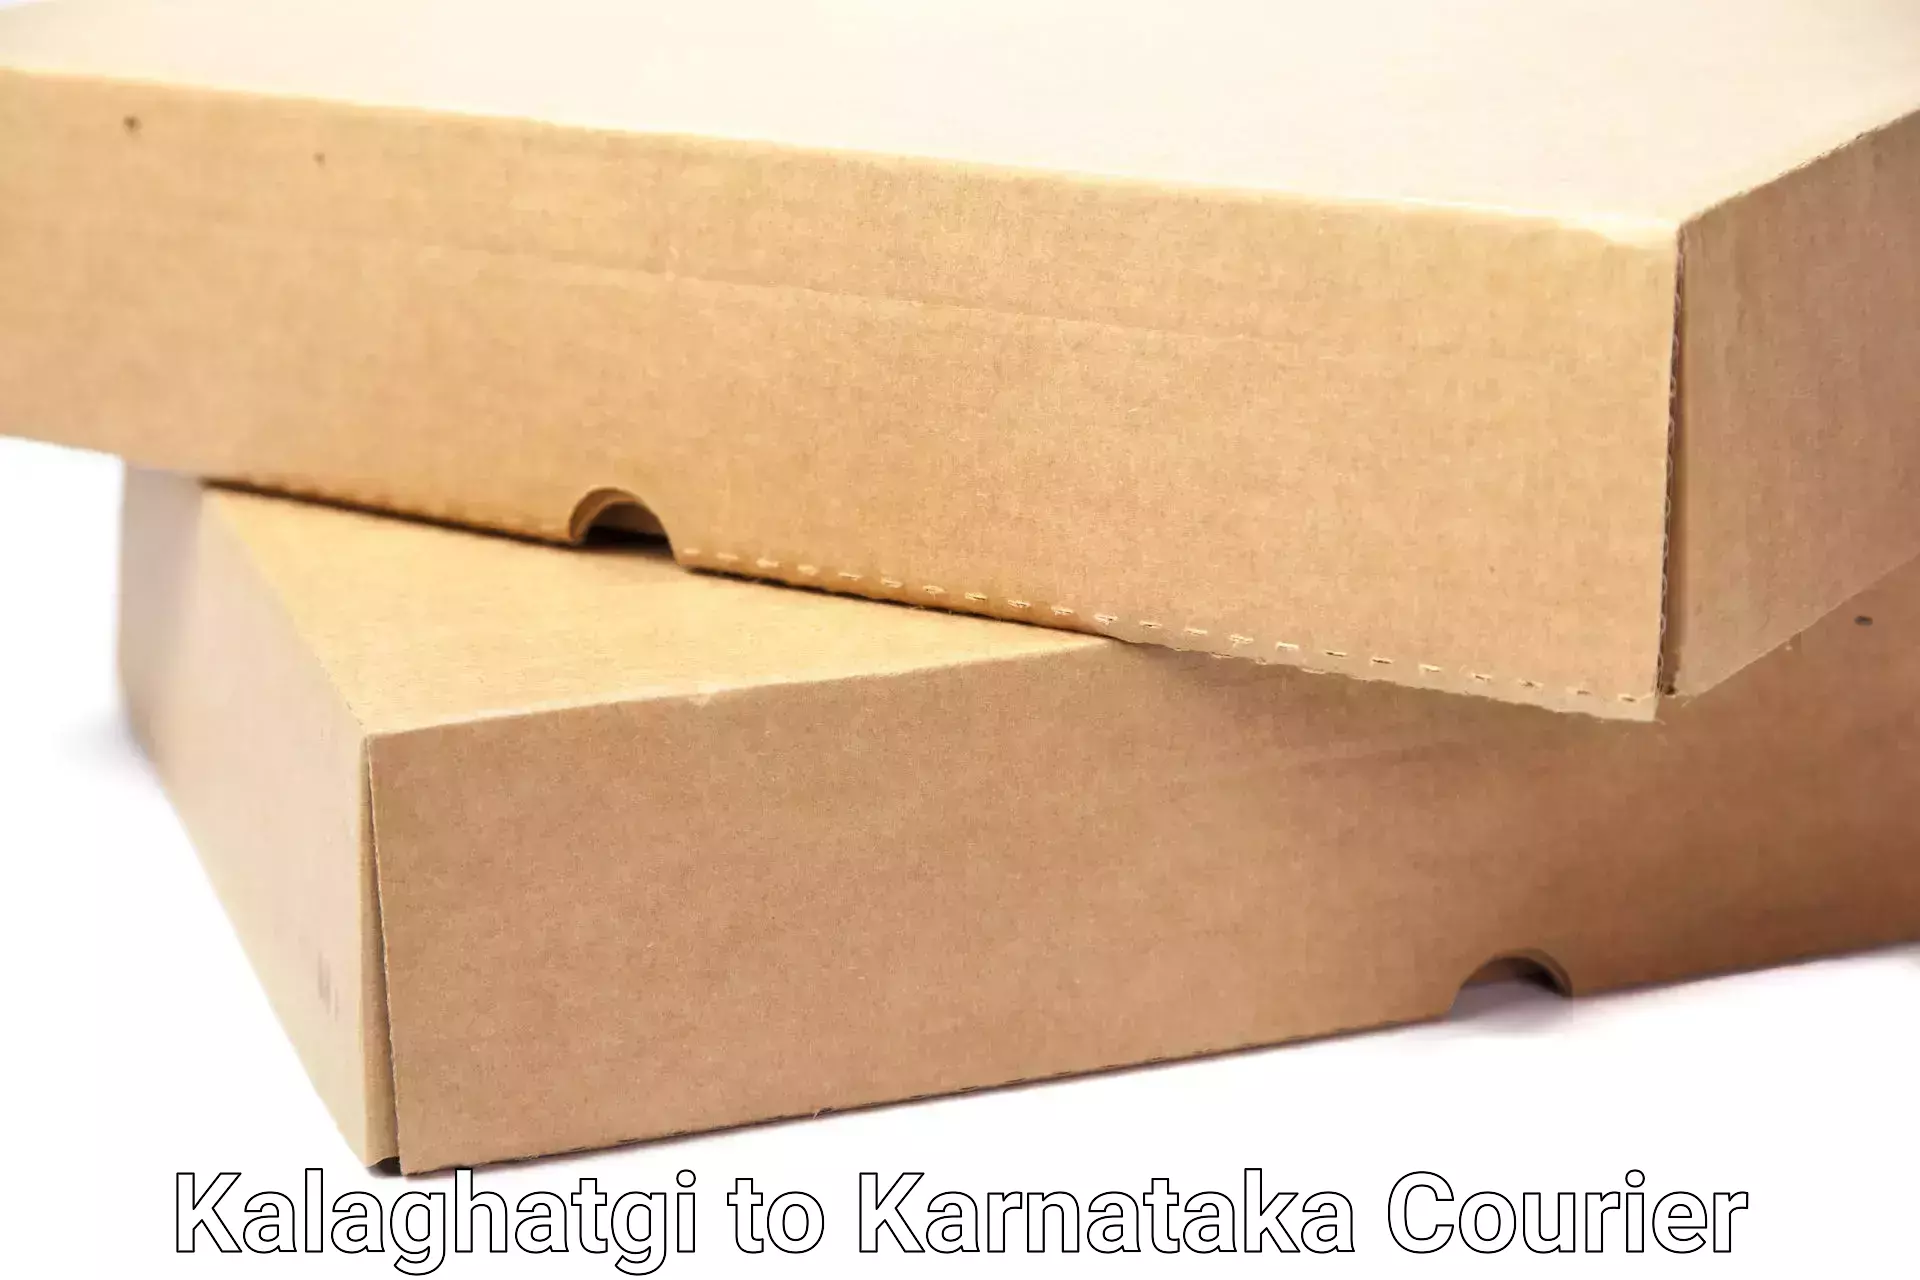 Efficient moving strategies Kalaghatgi to Nagamangala